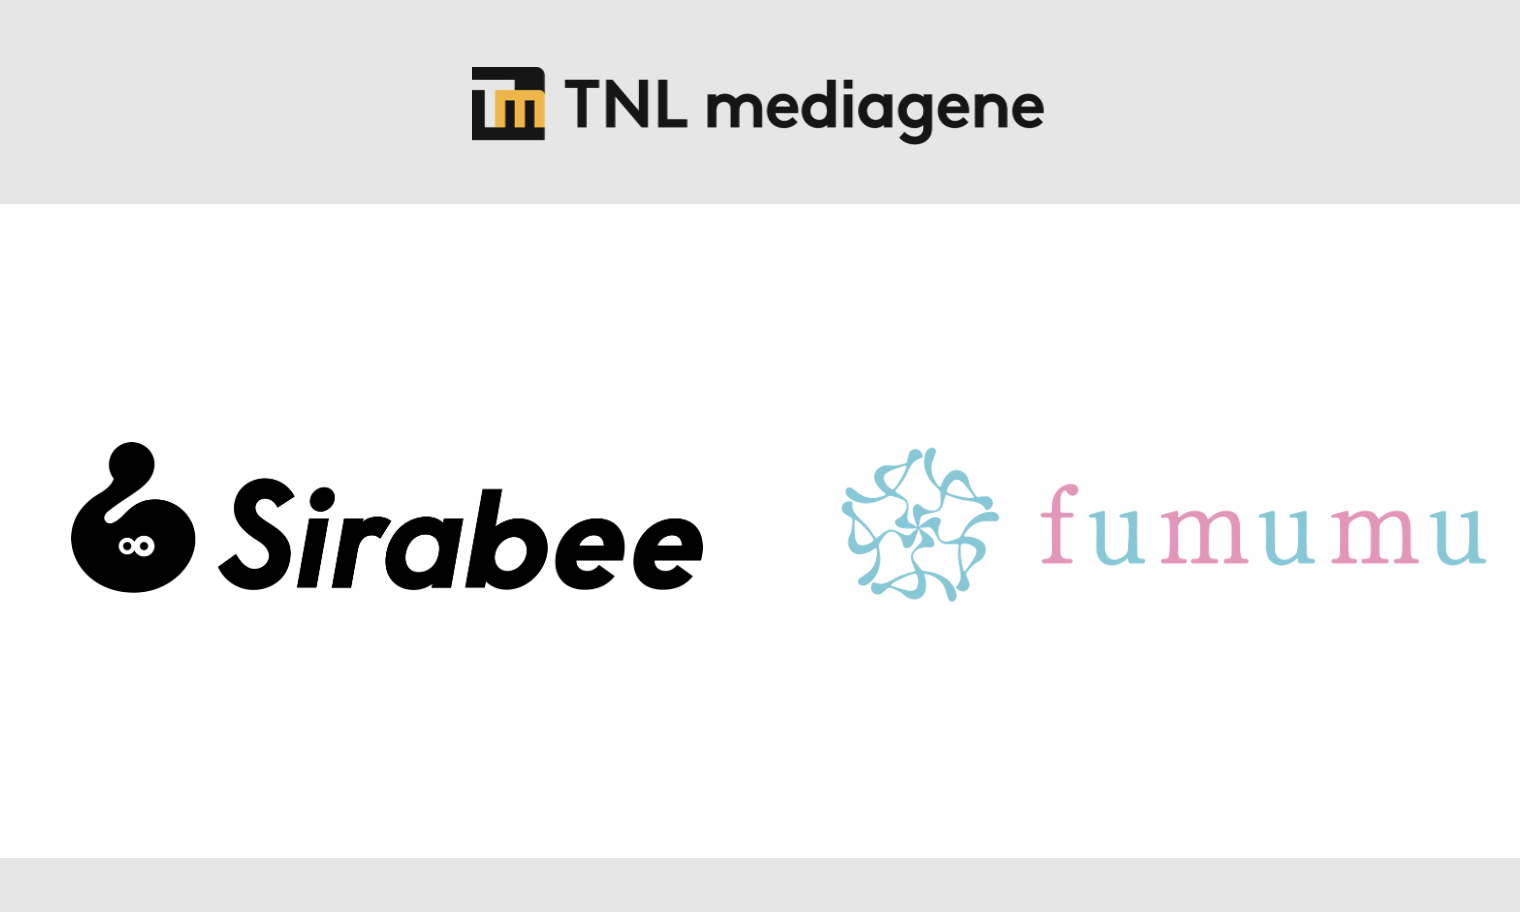 TNL Mediagene關鍵評論網媒體集團旗下的 Mediagene即日起正式收購由Newsy經營的內容媒體「Sirabee」和「fumumu」業務